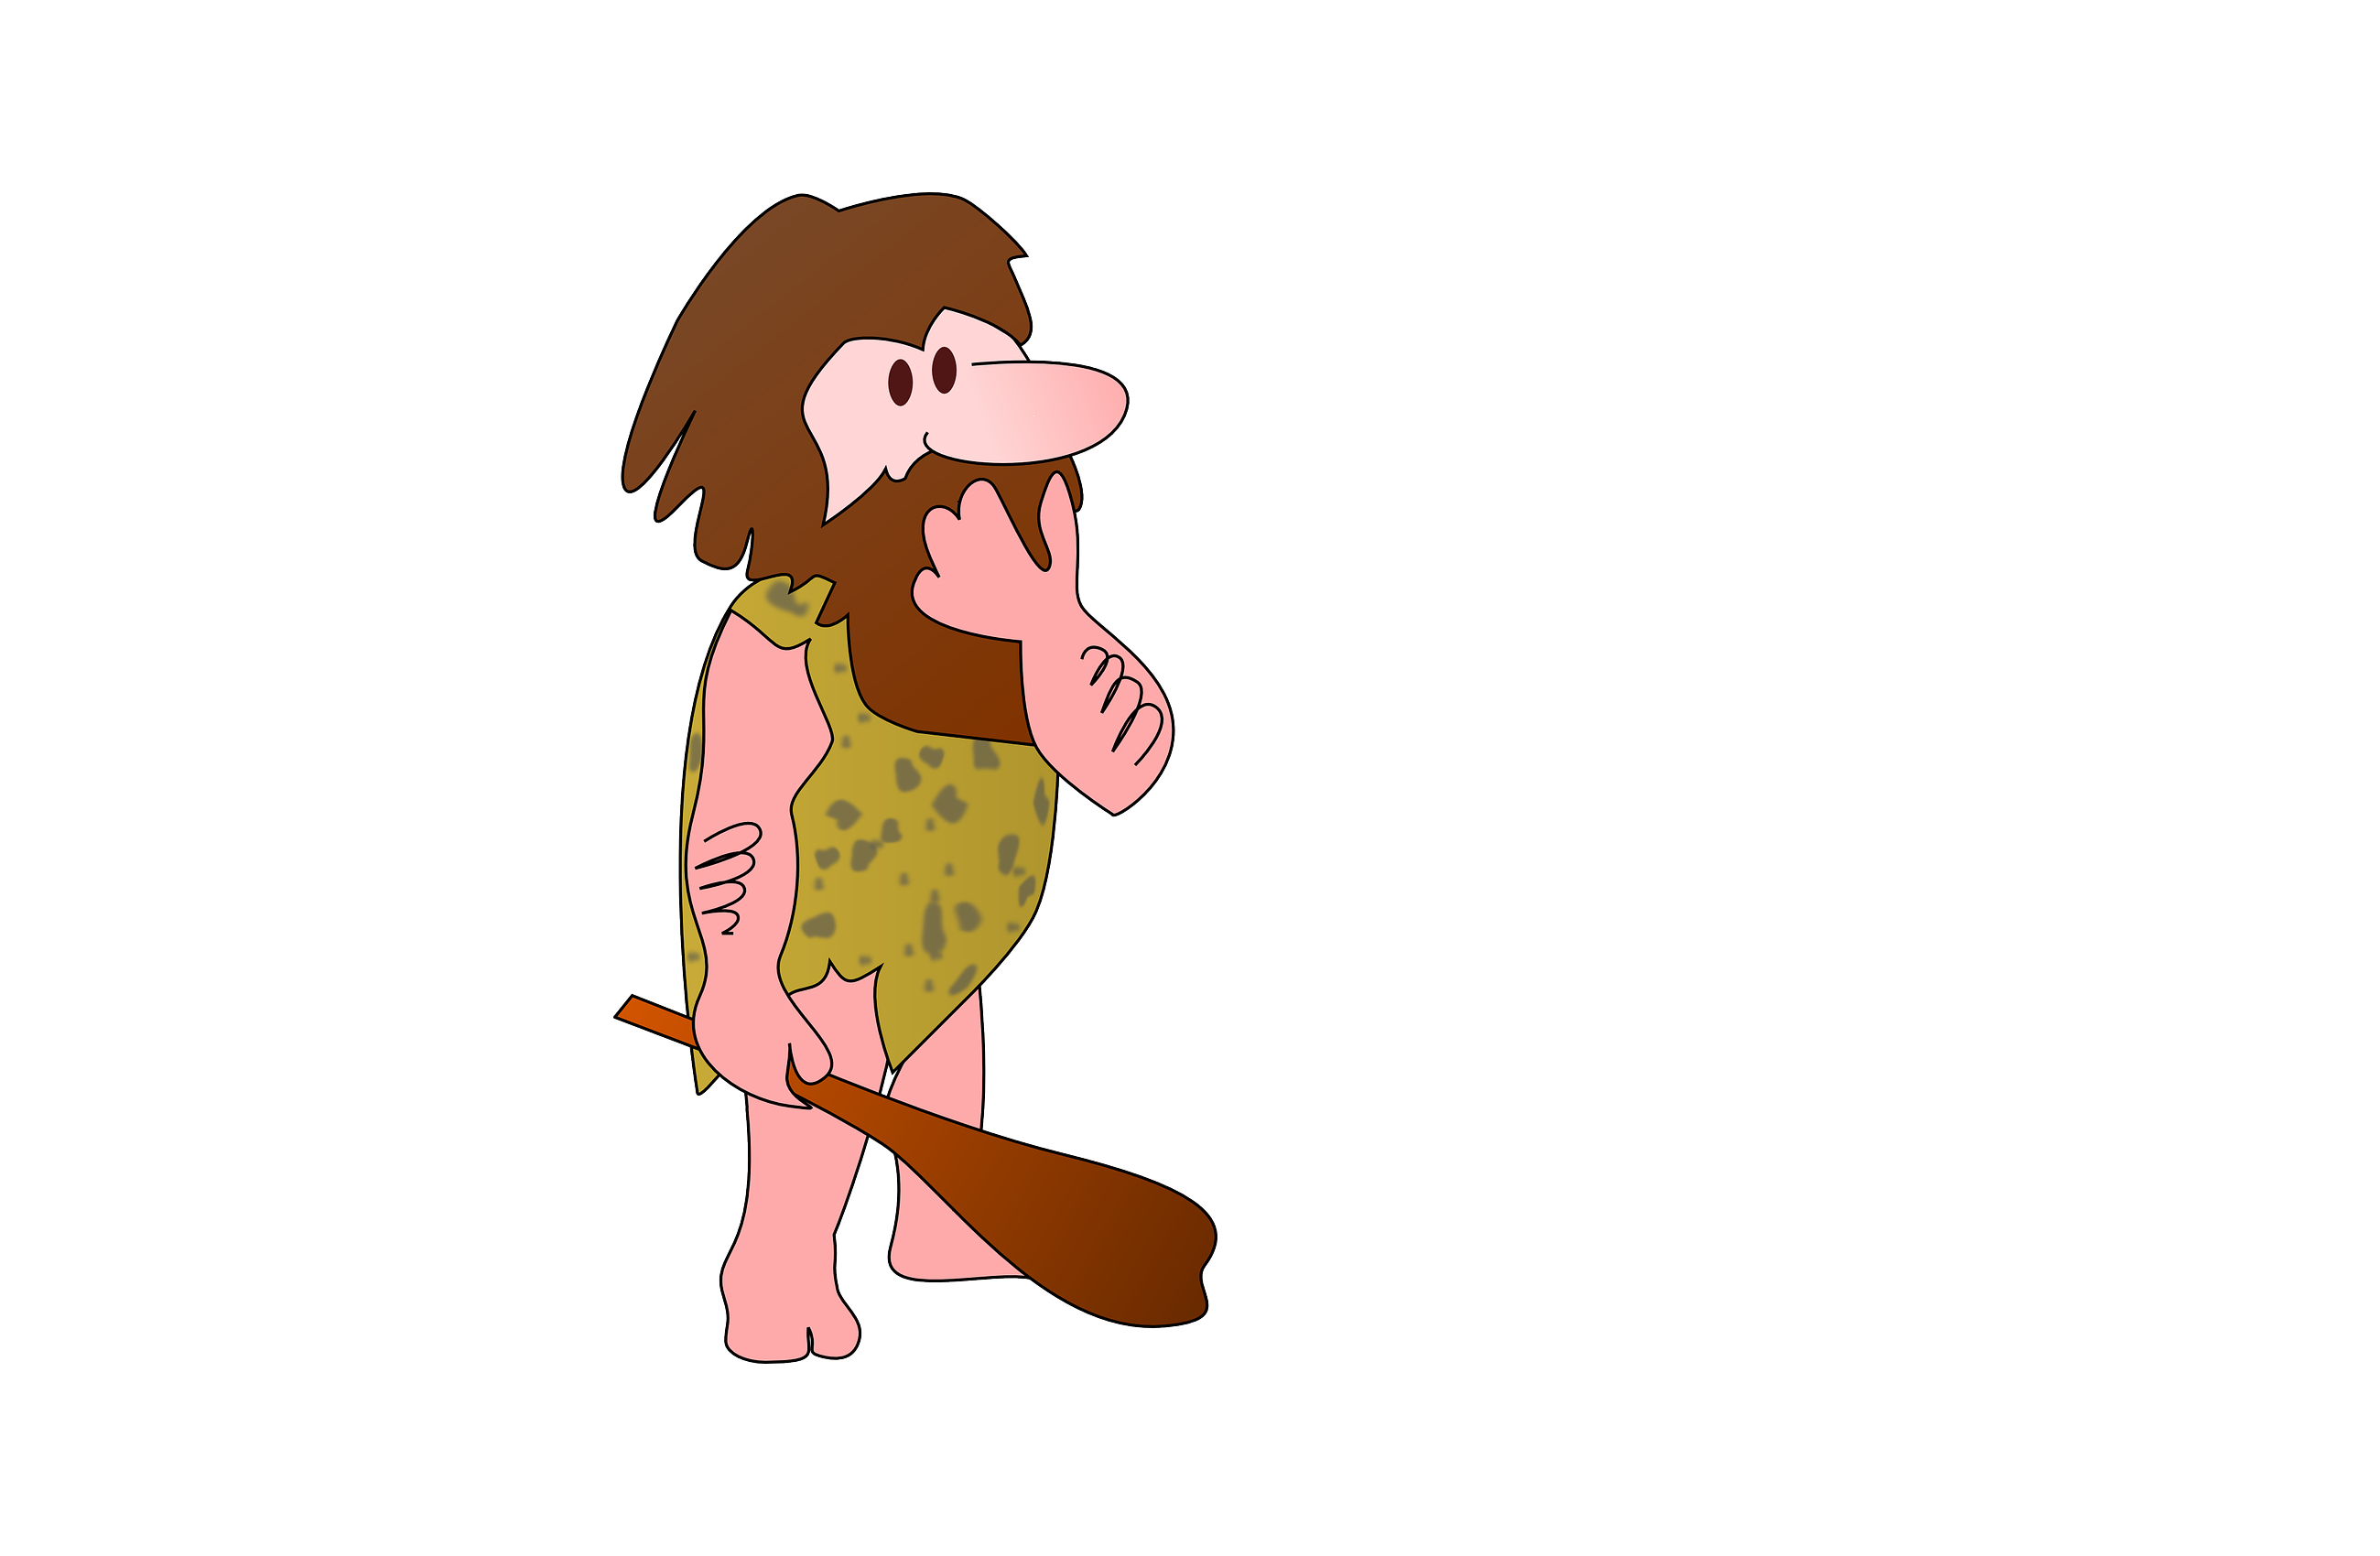 caveman-159964_1280-1.png